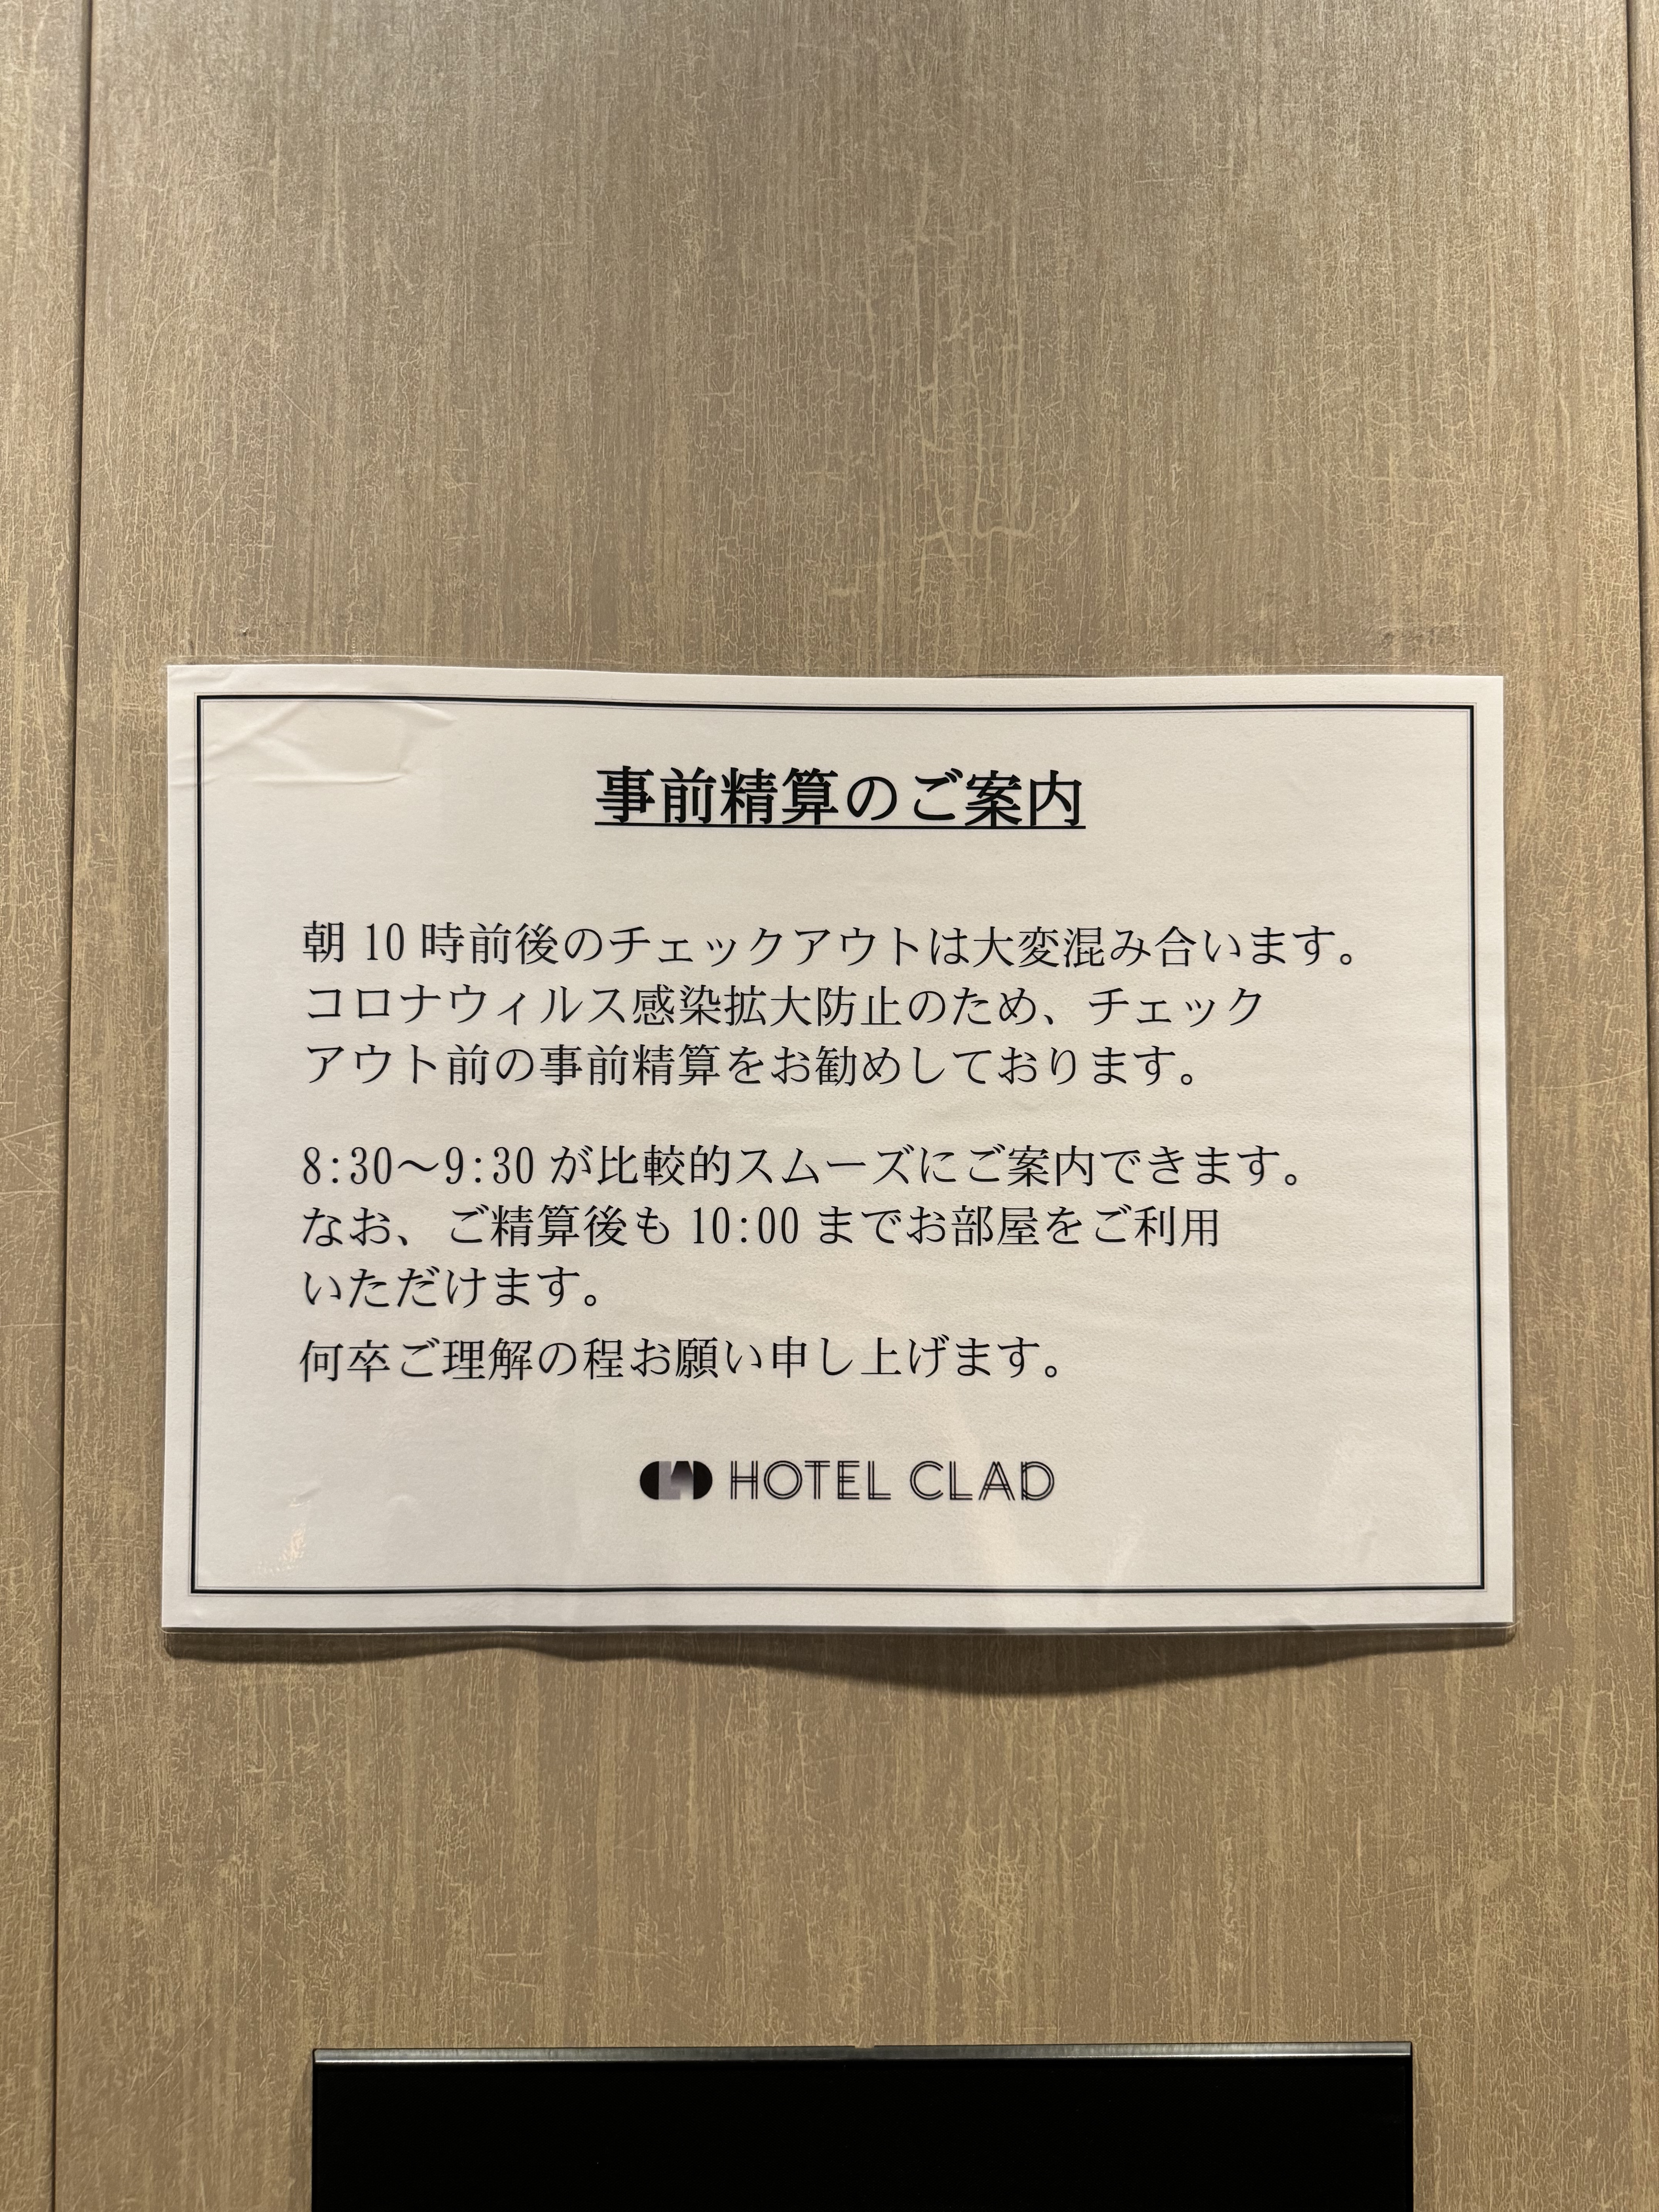 hotel clad